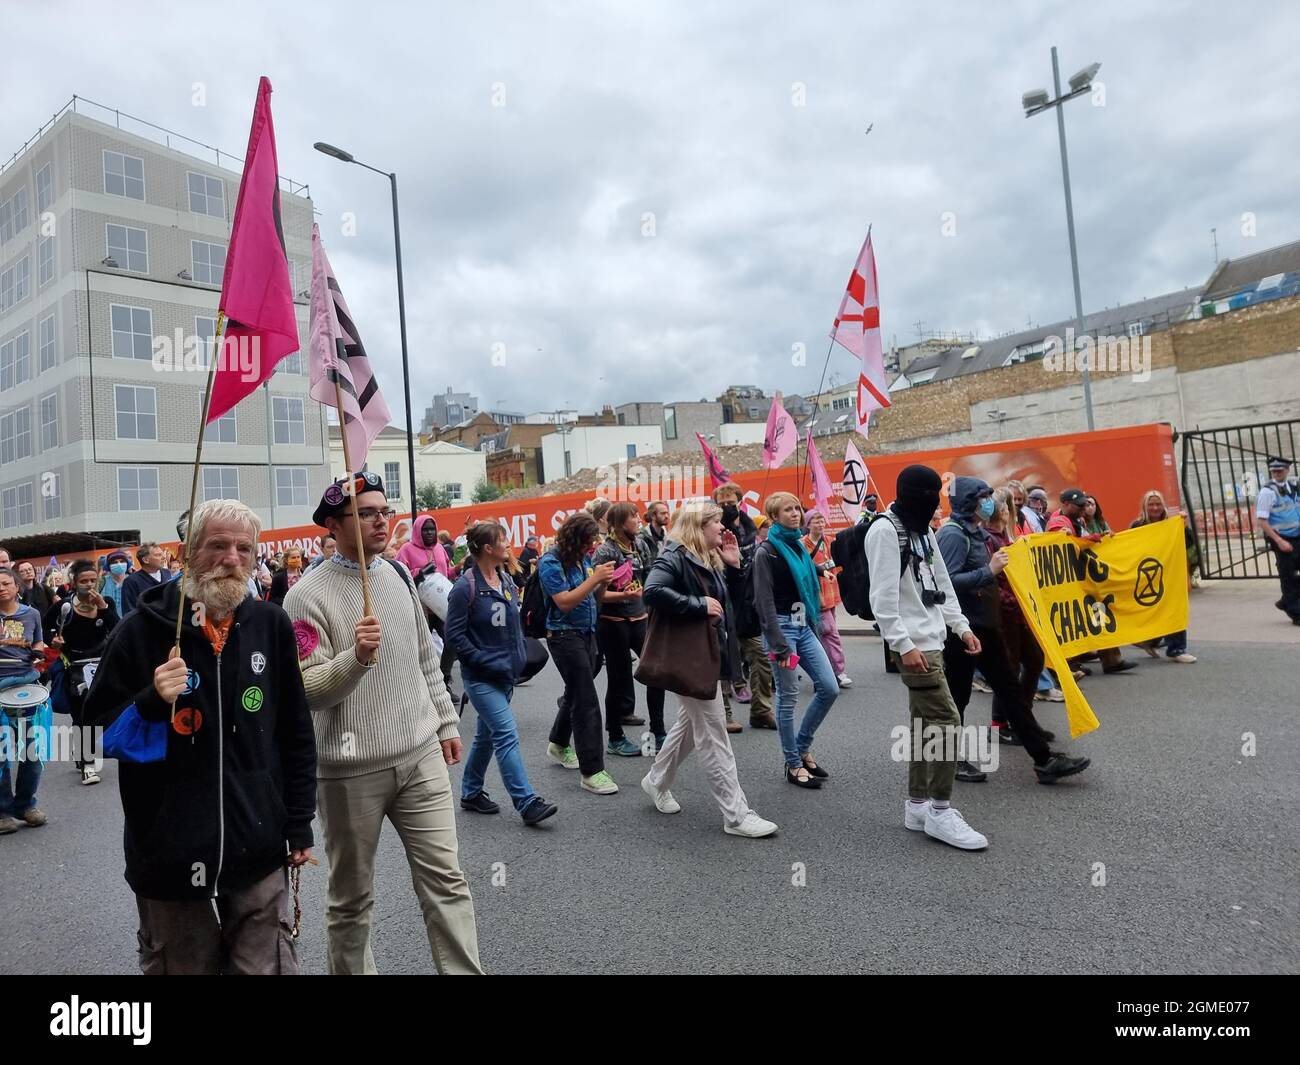 Die Demonstranten der Gruppe Extinction Rebellion marschieren am Borough Market im Zentrum von London vorbei und fordern, dass die Regierung dringende Maßnahmen zur Bekämpfung der Umweltzerstörung ergreift. Solche Proteste nehmen vor der COP 26-Konferenz der Staats- und Regierungschefs der Weltstaaten am 31. Oktober in Glasgow zu. London, Großbritannien. Stockfoto